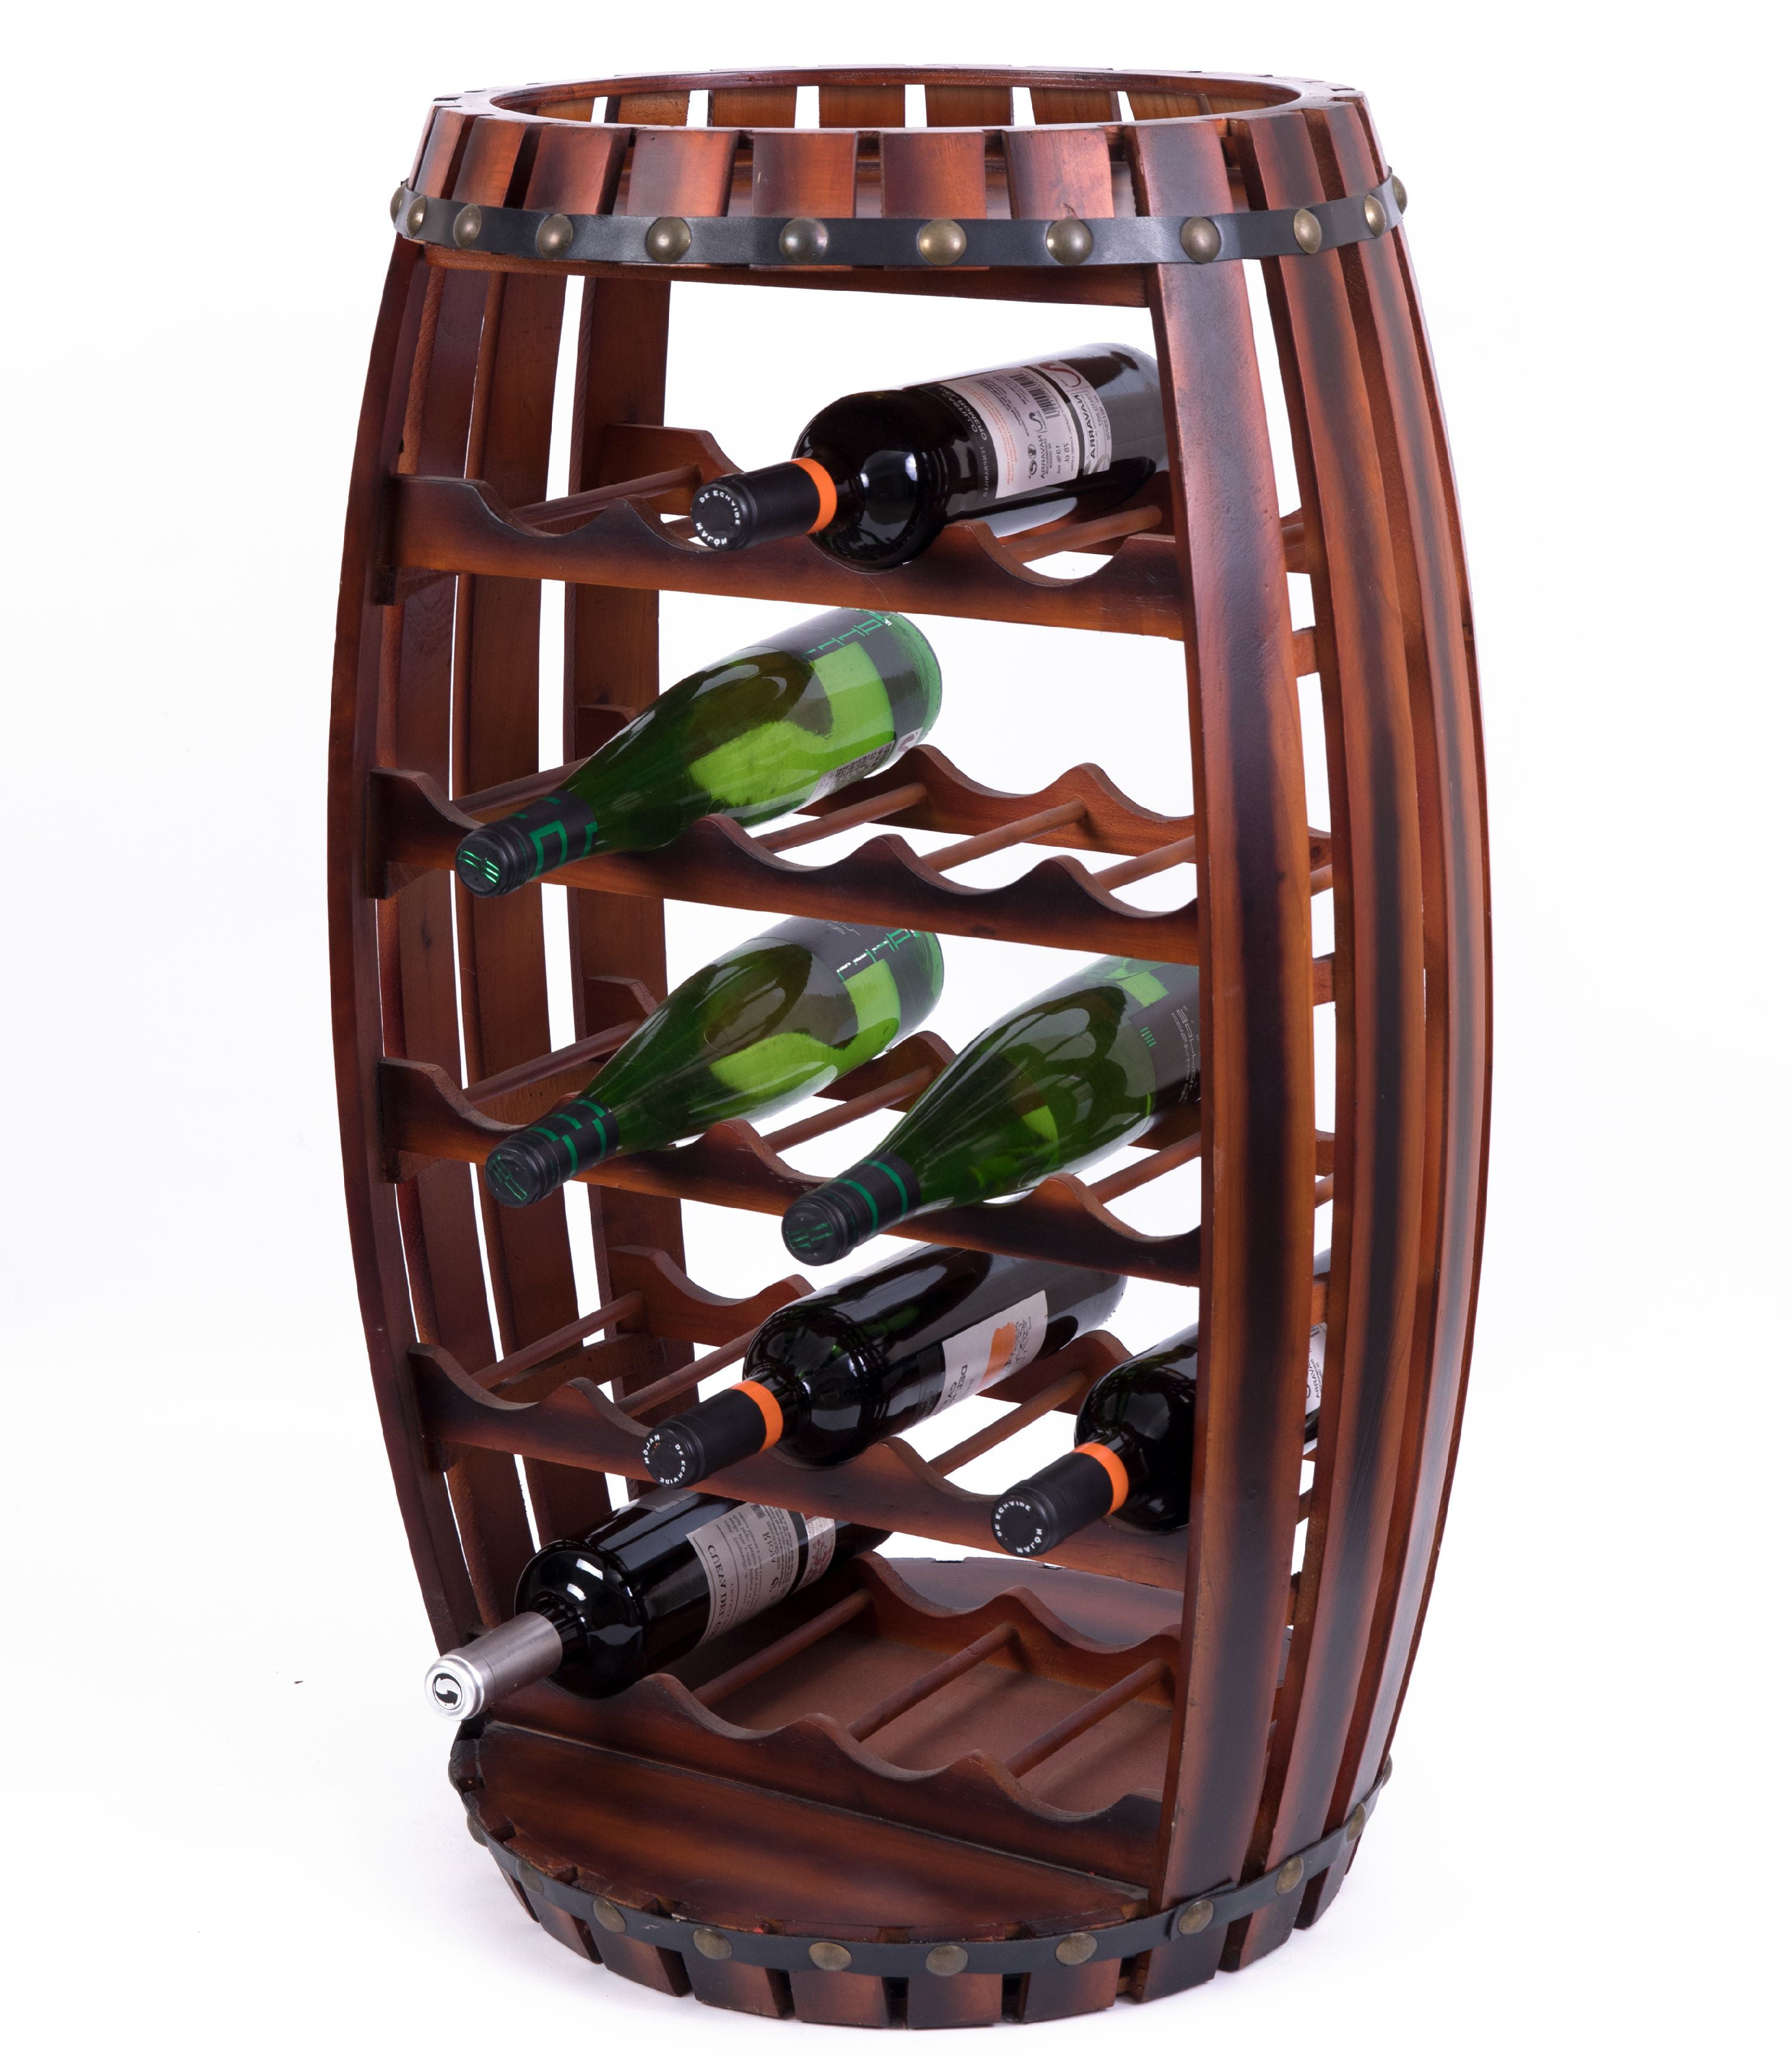 Rustic Barrel Shaped Wooden Wine Rack For 23 Bottles